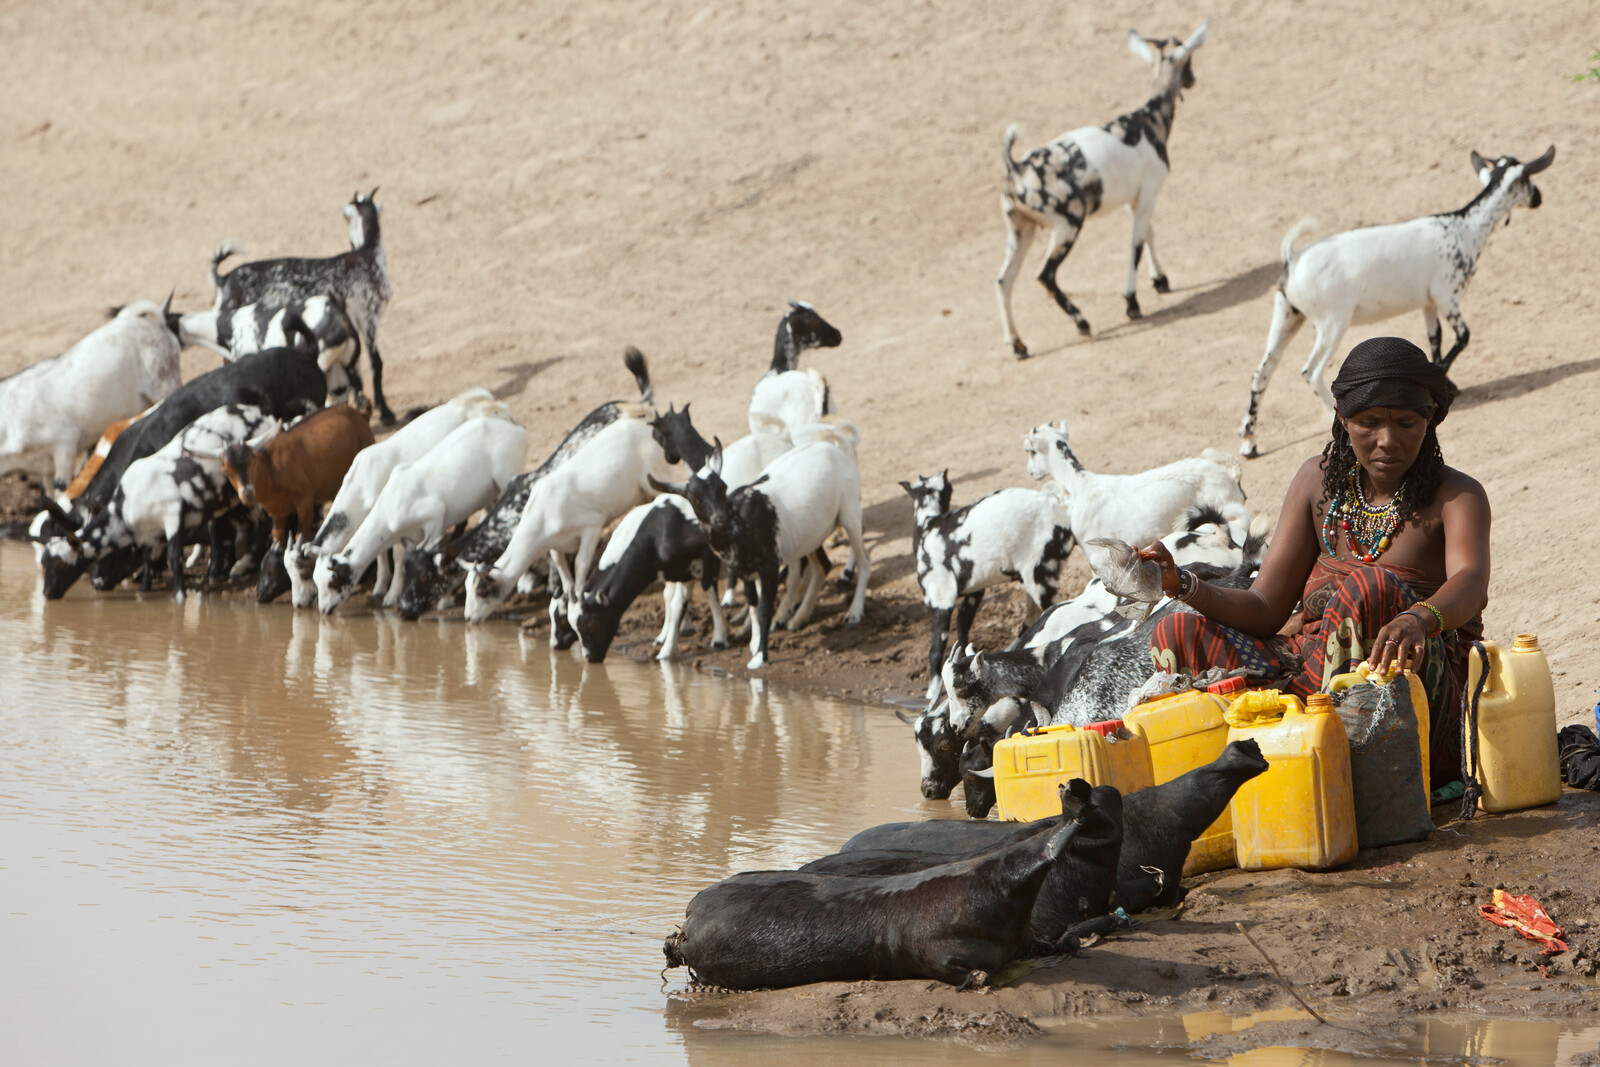 Wasserlöcher sind häufig durch Vieh und Waschmittel verseucht. Dennoch holen die Menschen dort ihr Trinkwasser.